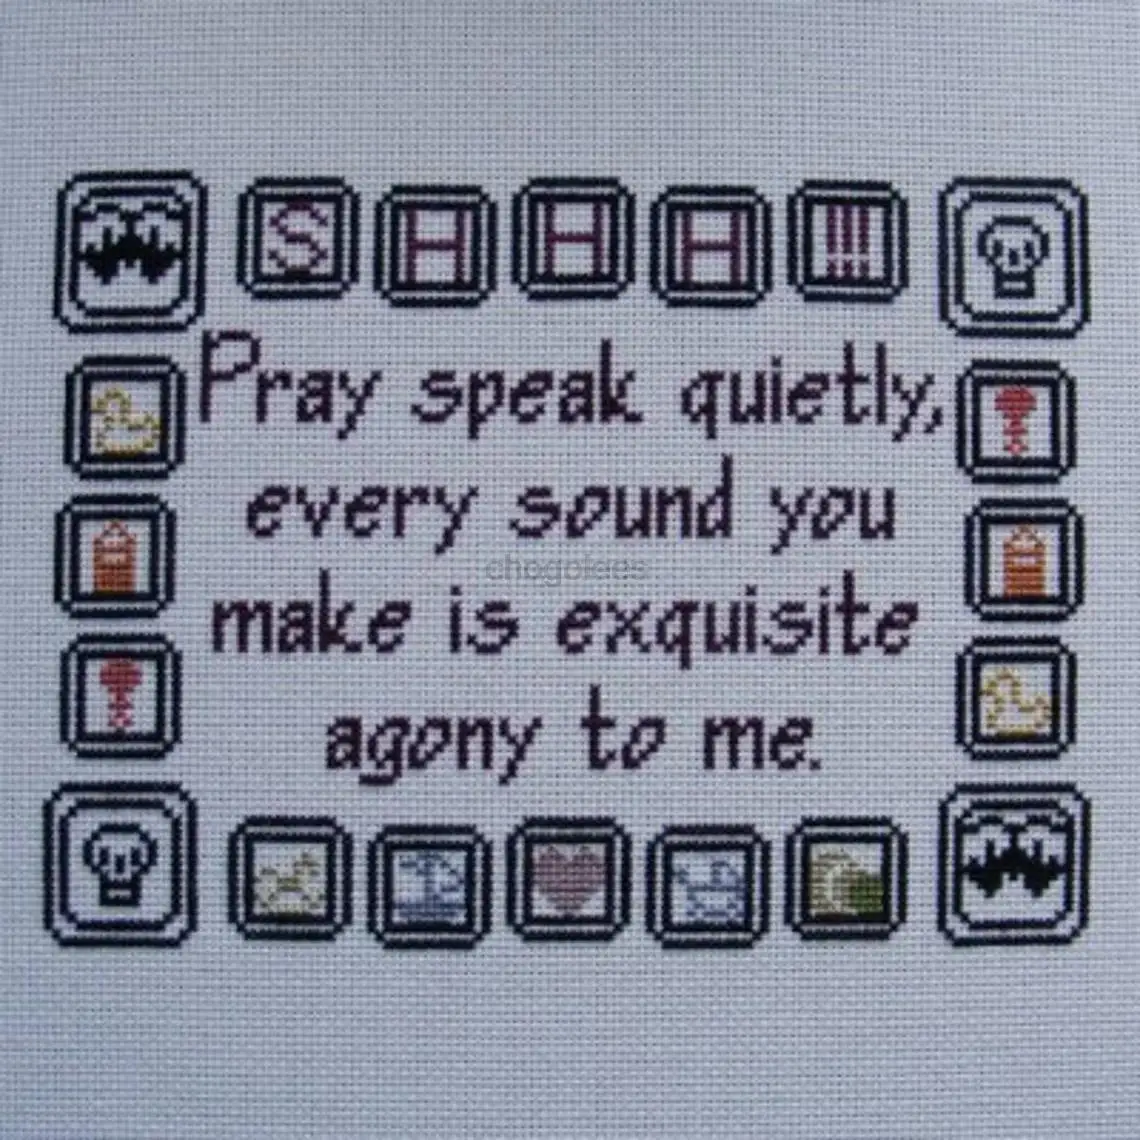 Speaking quietly